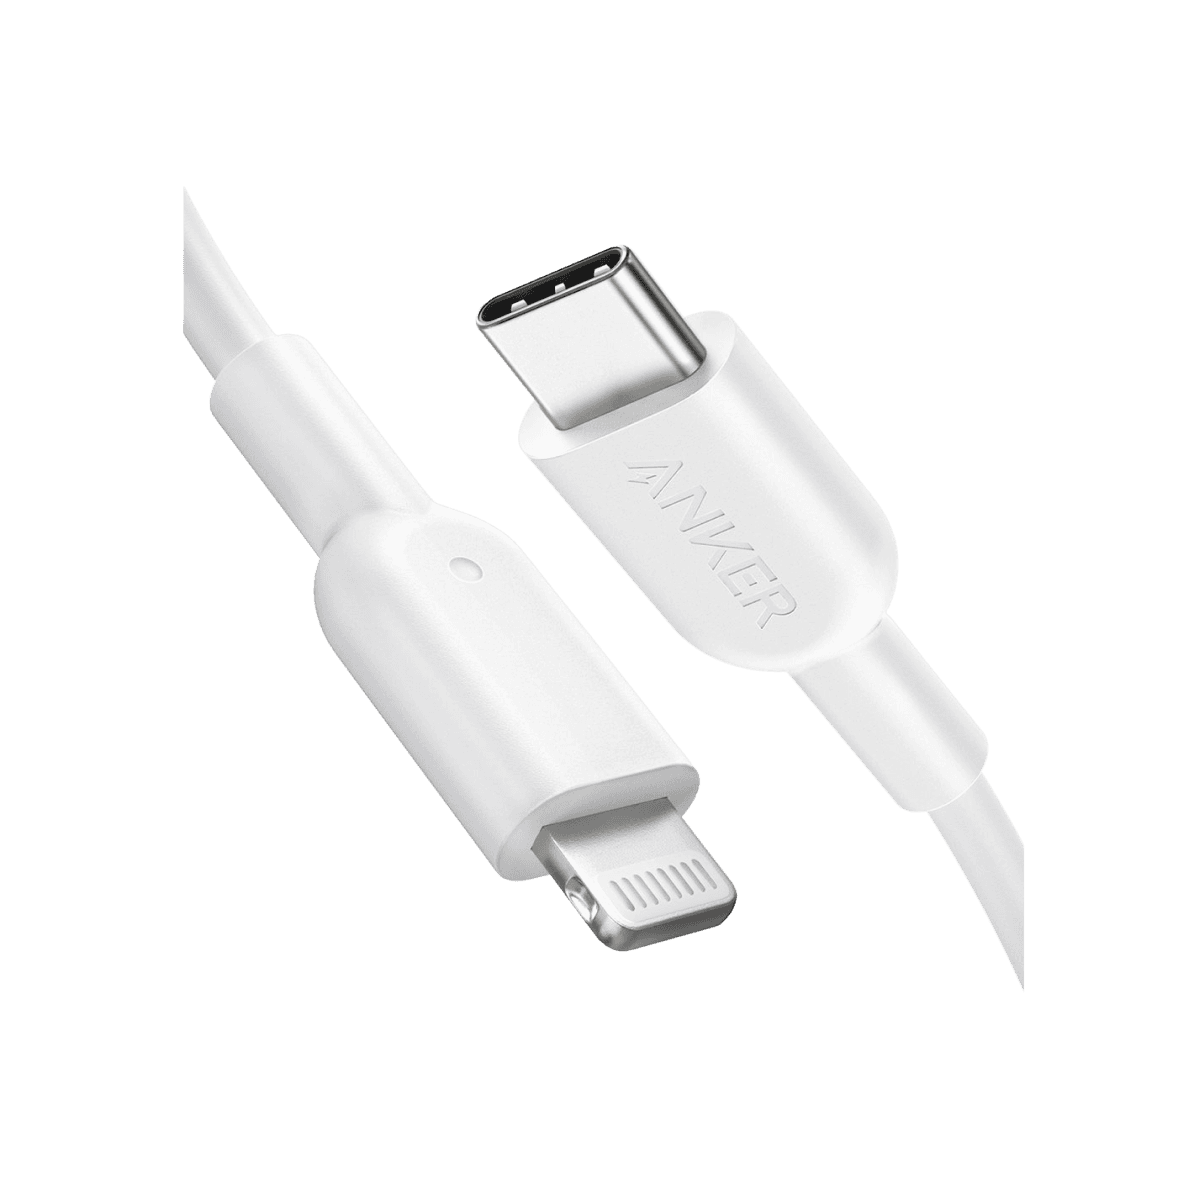 Anker <b>321</b> USB-C to Lightning Cable (3ft / 6ft / 10ft)